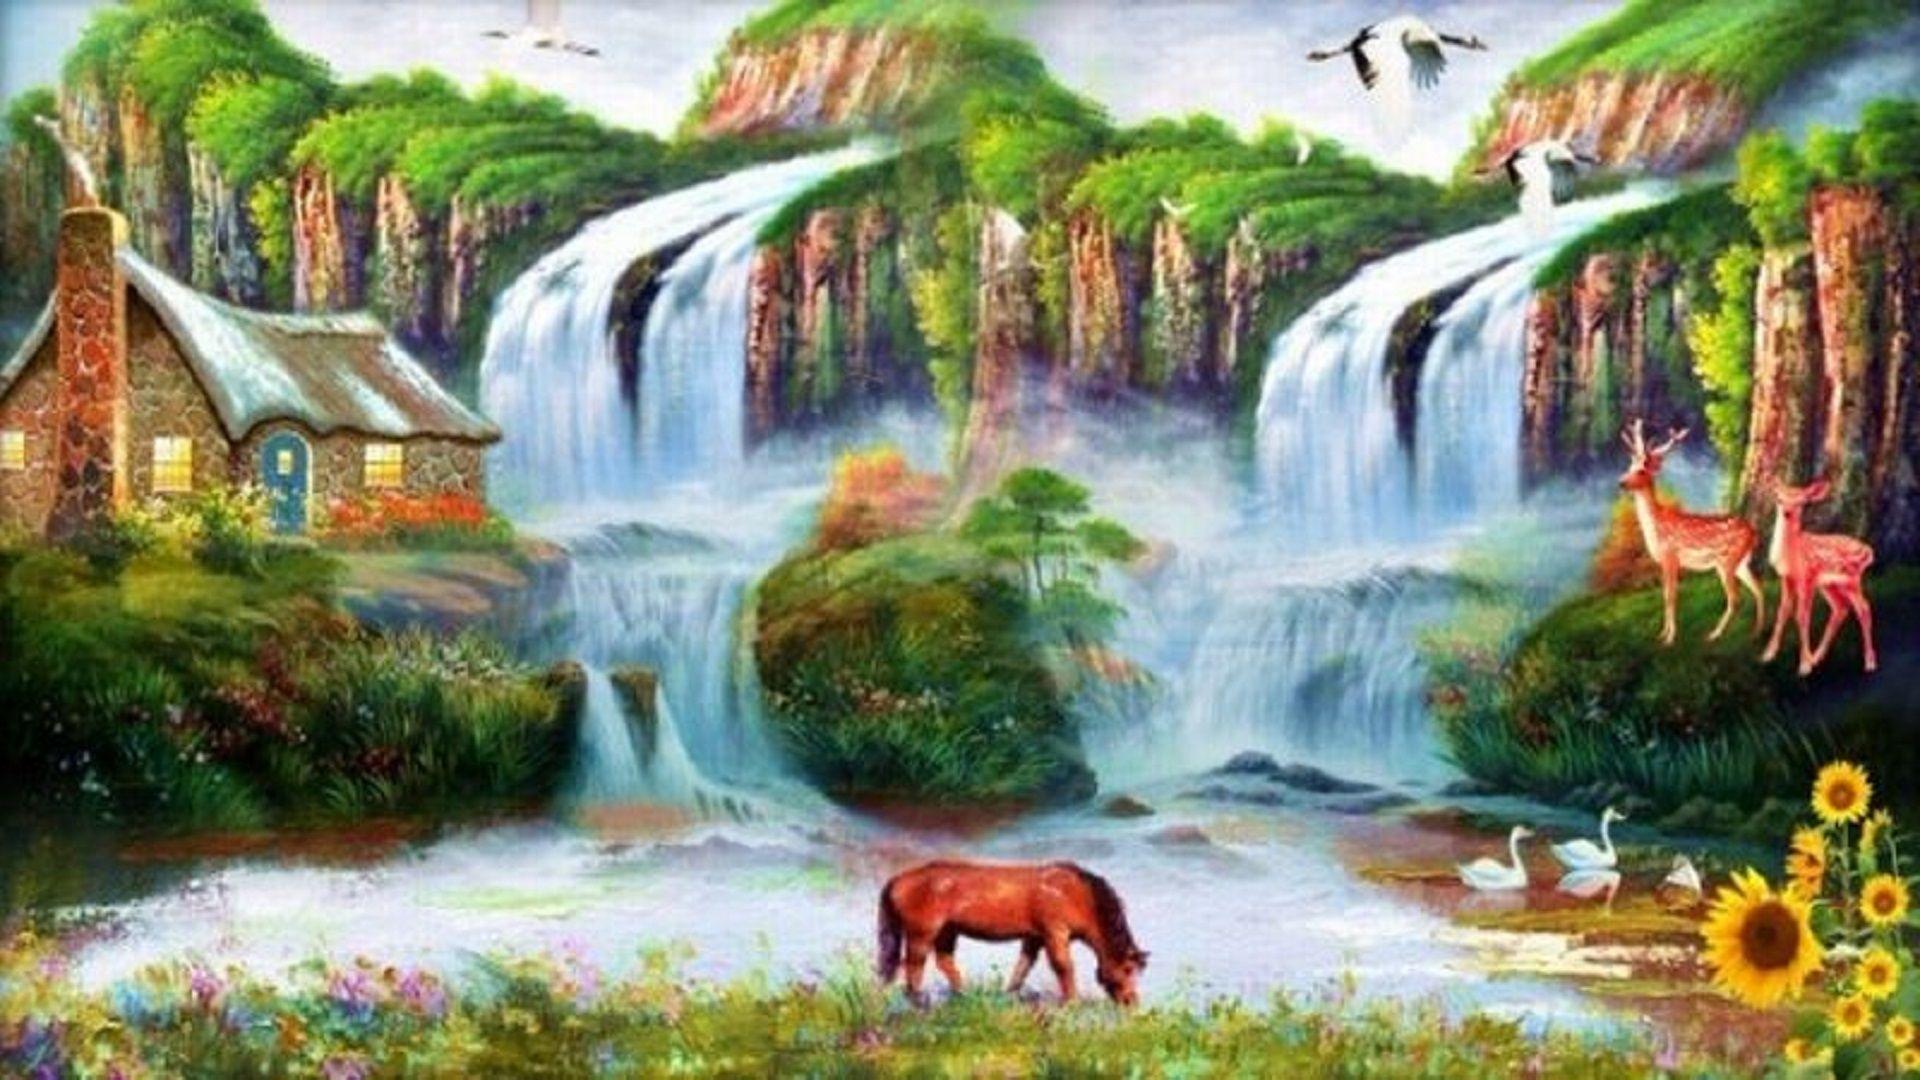 Download beautiful nature wallpaper for desktop Gallery